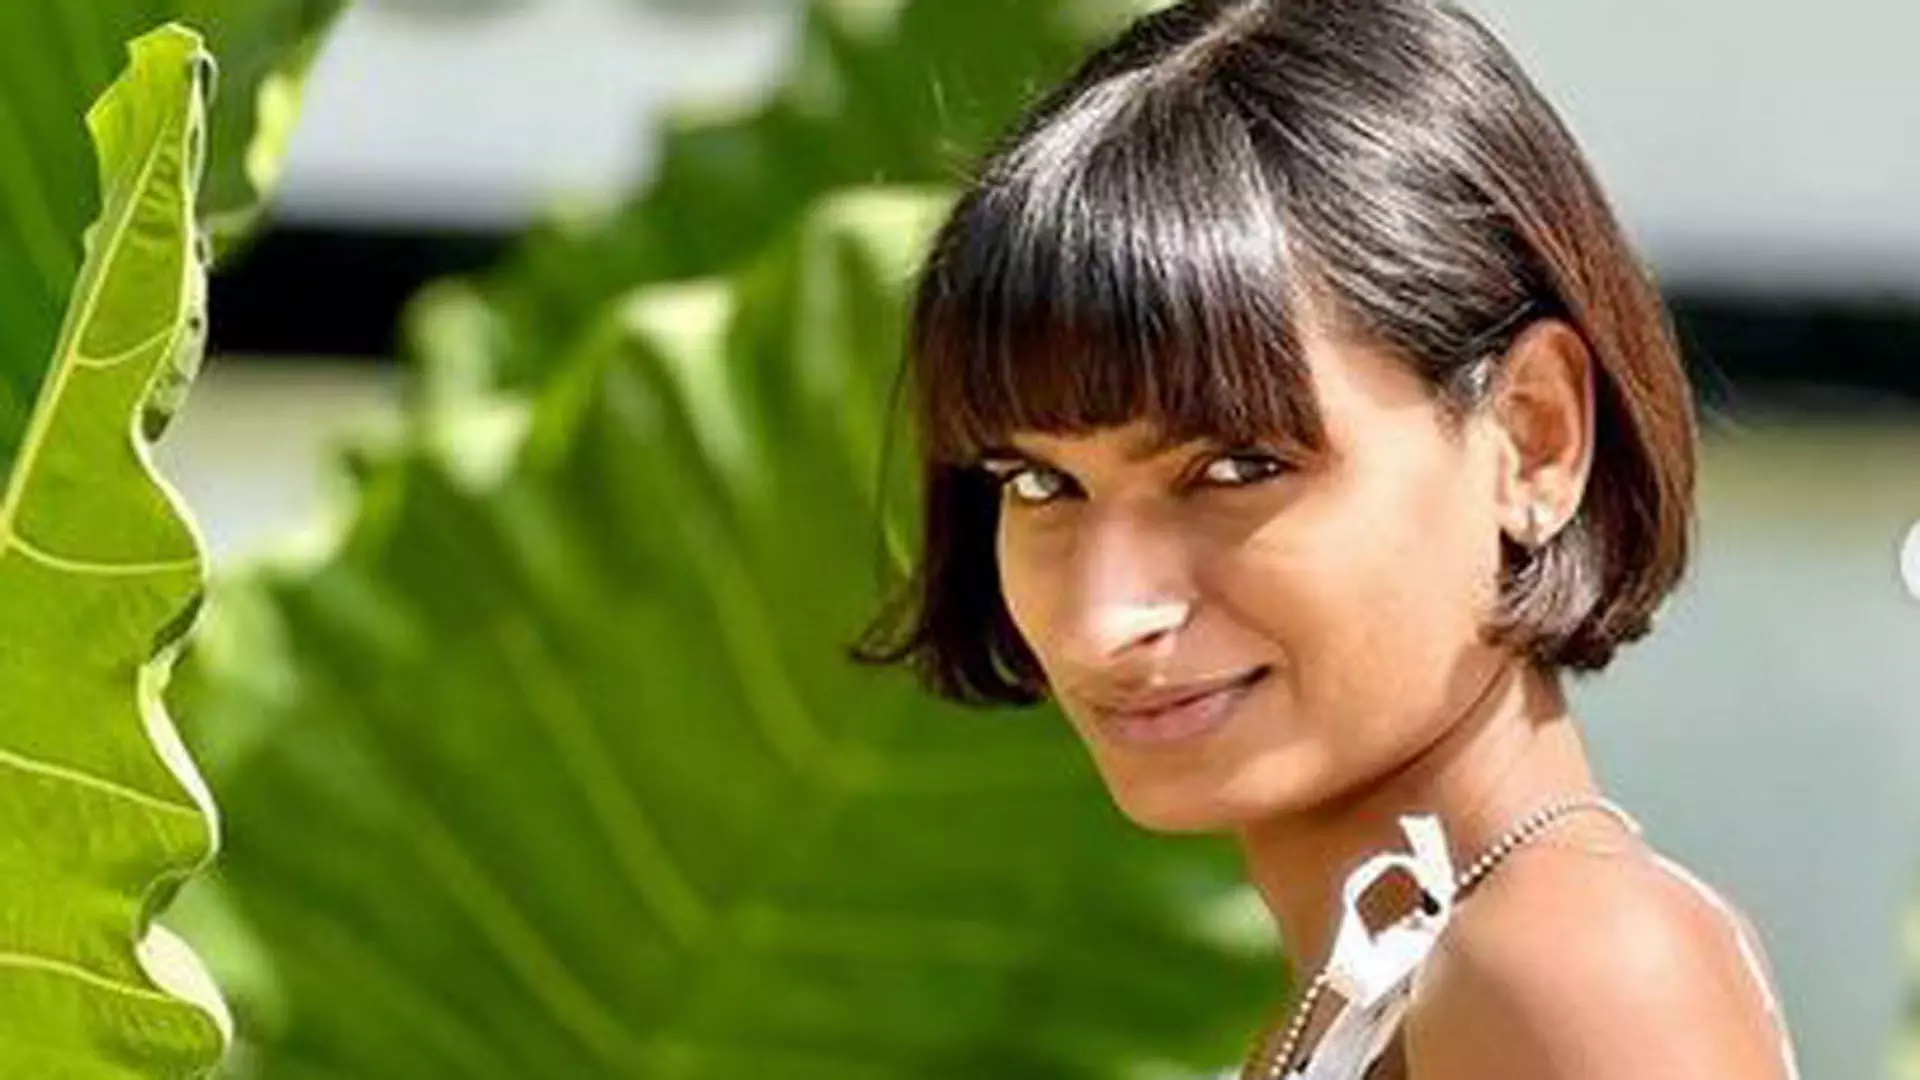 लव, सेक्स और धोखा 2 में ट्रांसजेंडर महिला बोनिता राजपुरोहित मुख्य भूमिका में